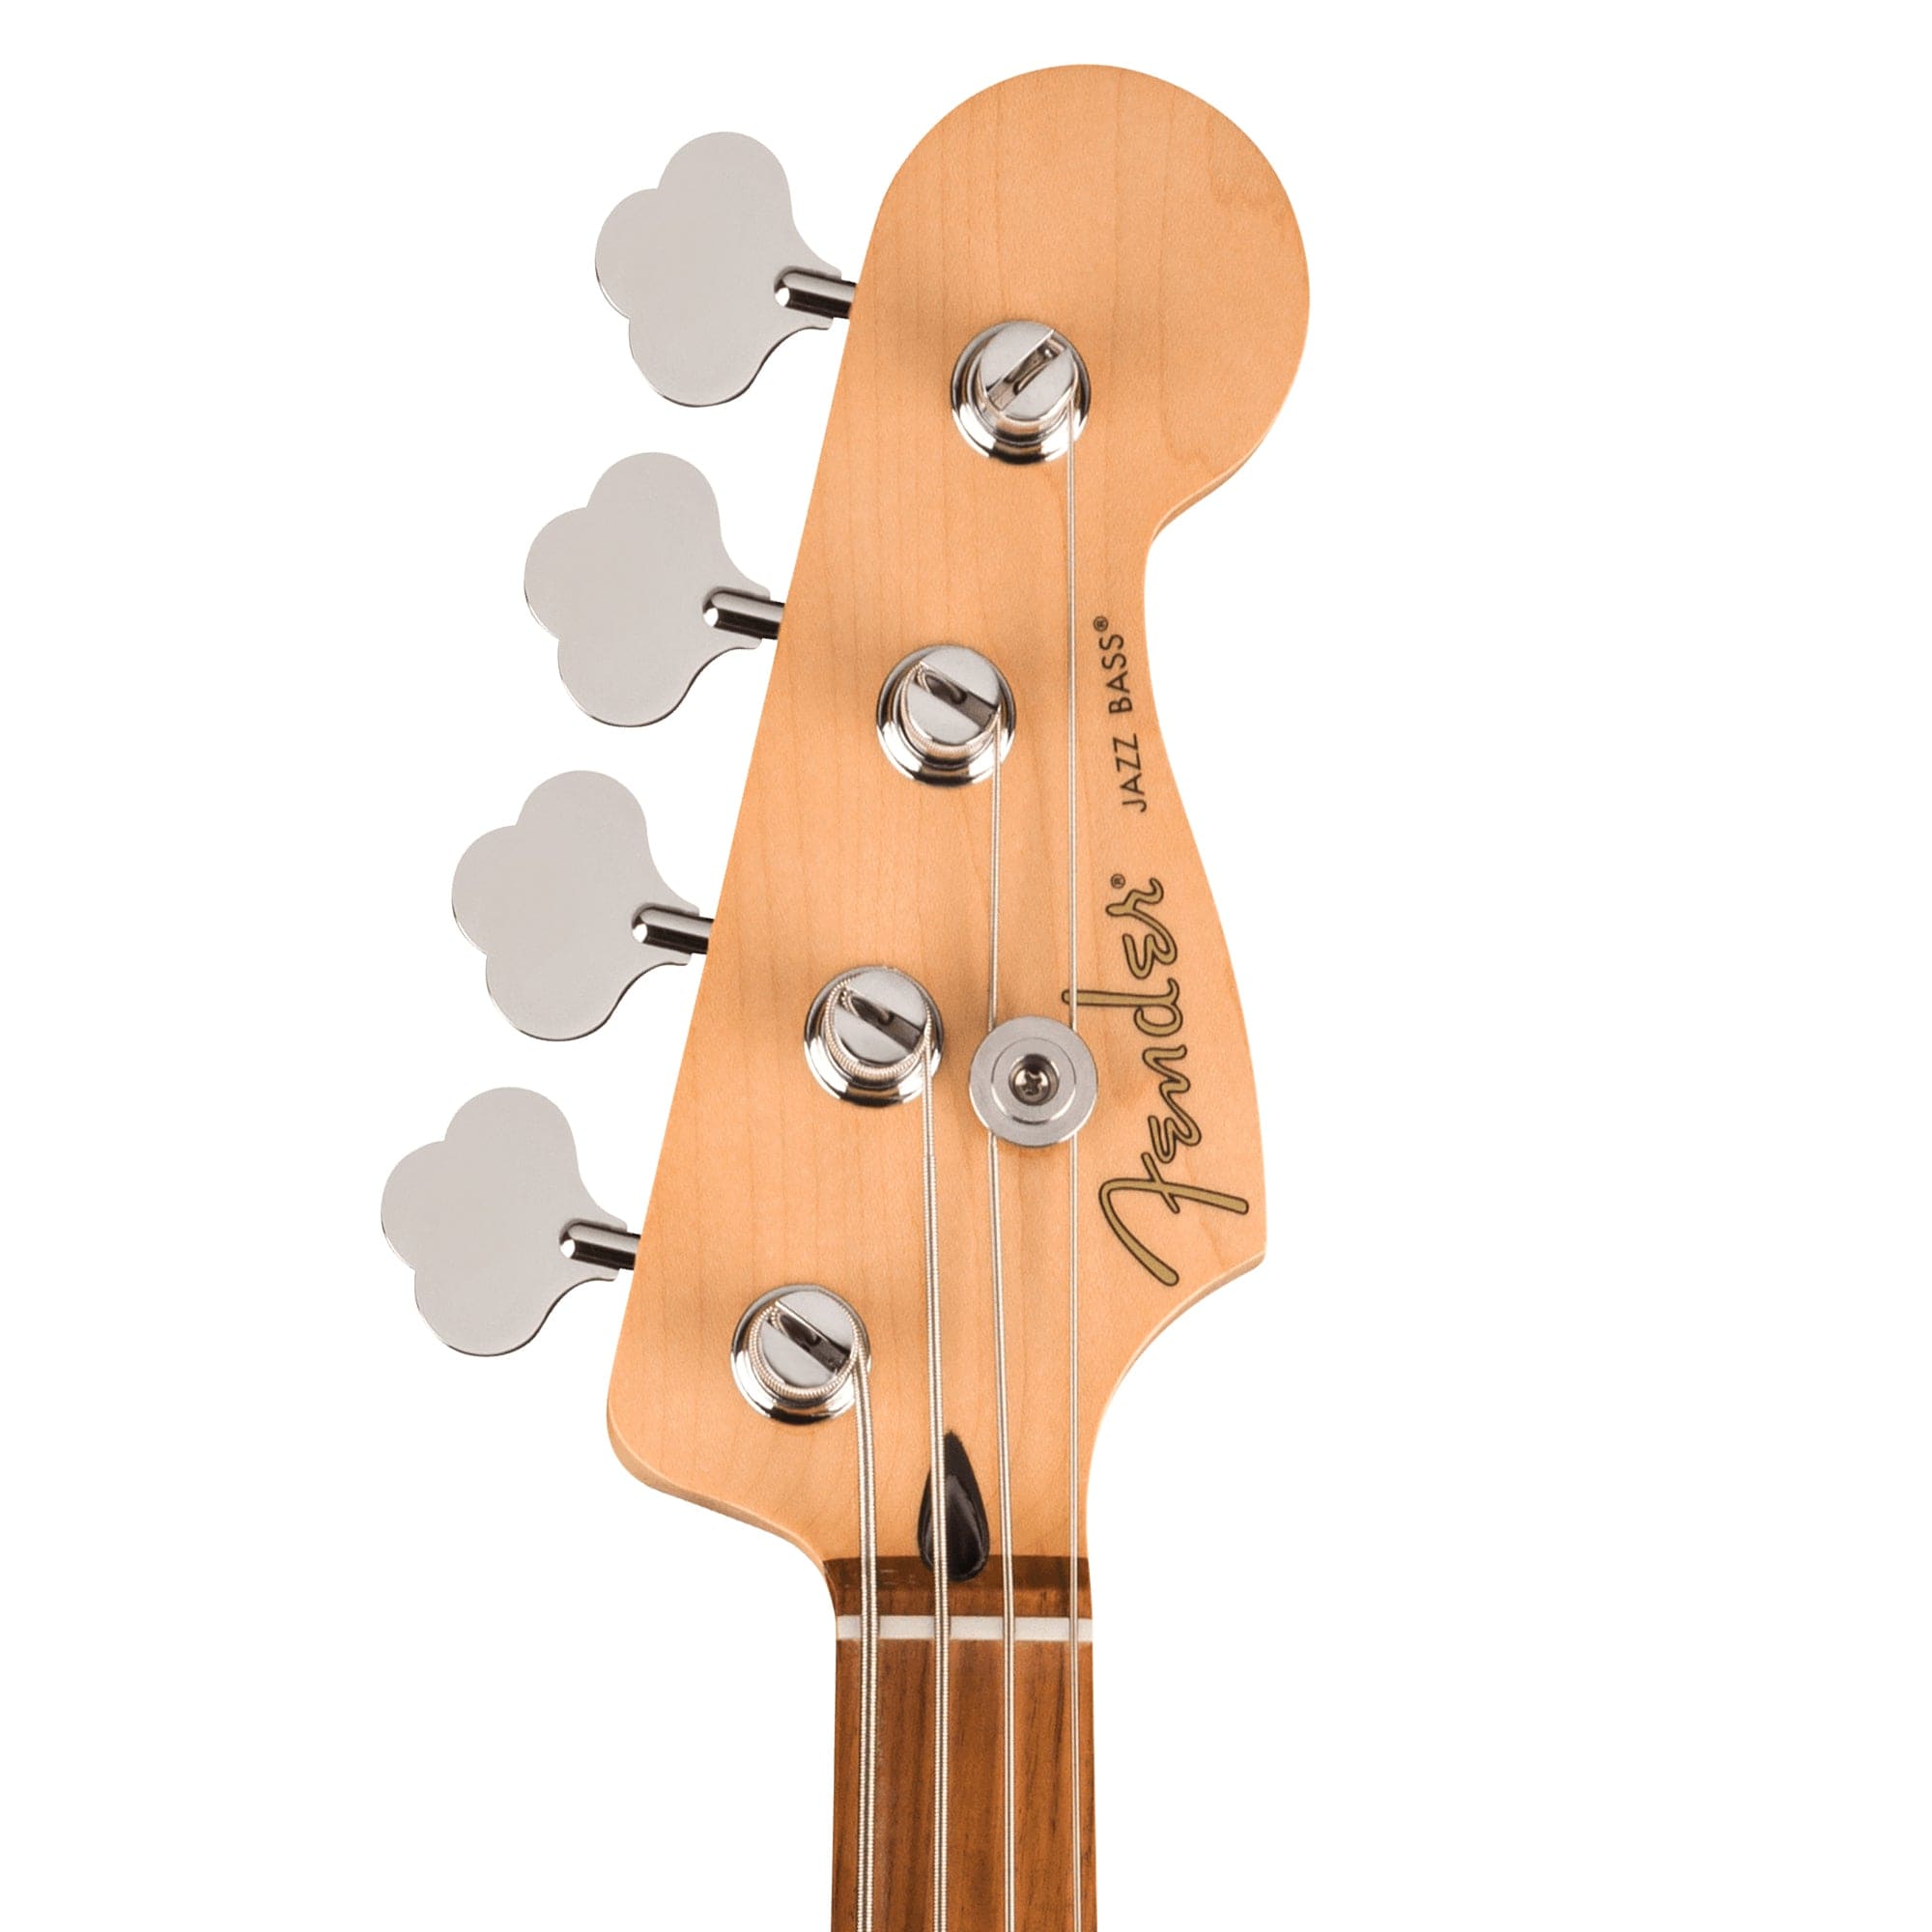 Fender Player Jazz Bass Candy Apple Red Bass Guitars / 4-String